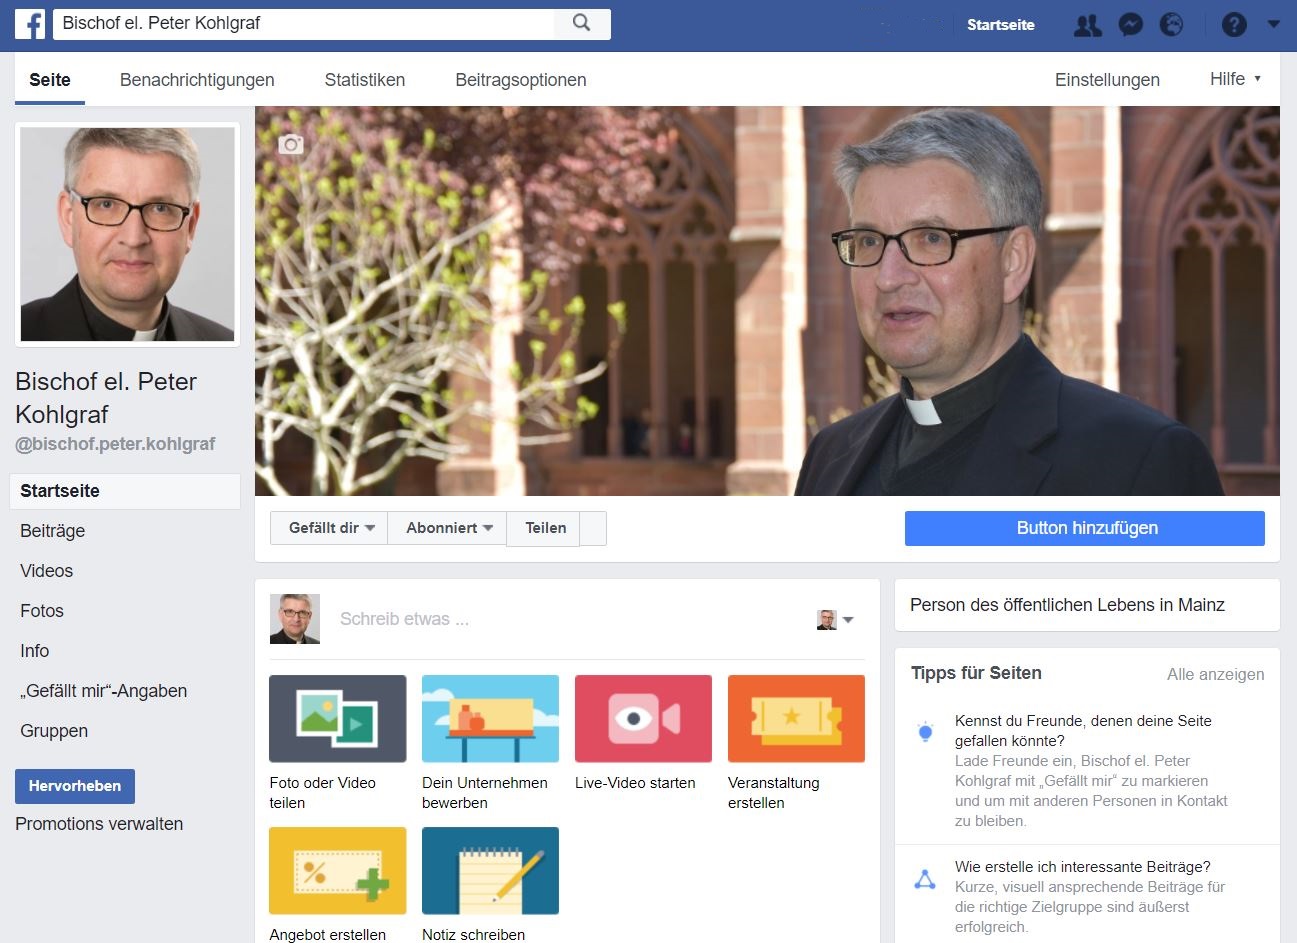 Der künftige Bischof Peter Kohlgraf auf Facebook (c) Bistum Mainz